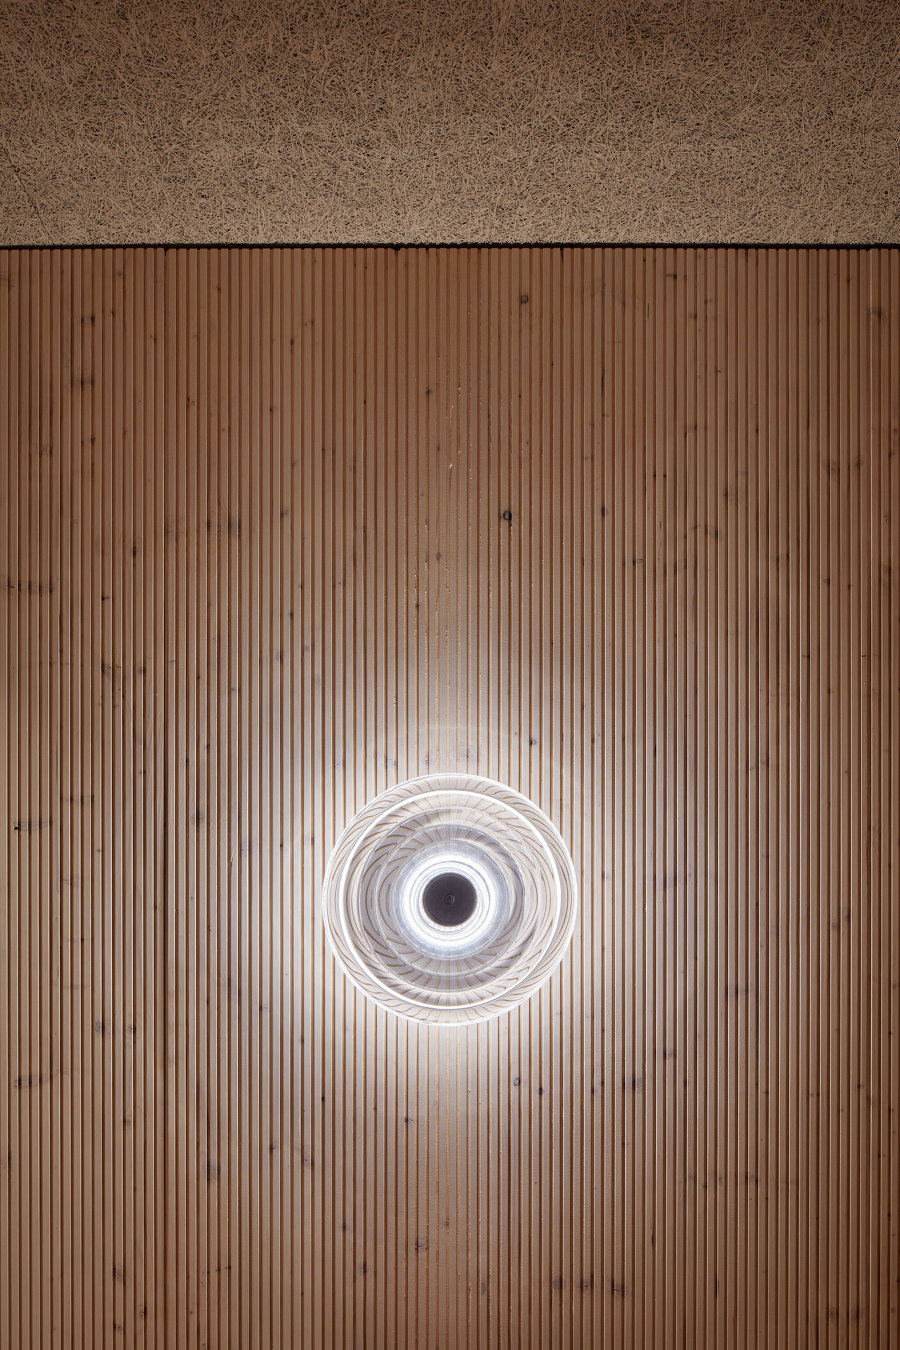 Sauna World in Trebon de Plus One Architects | Instalaciones Spa